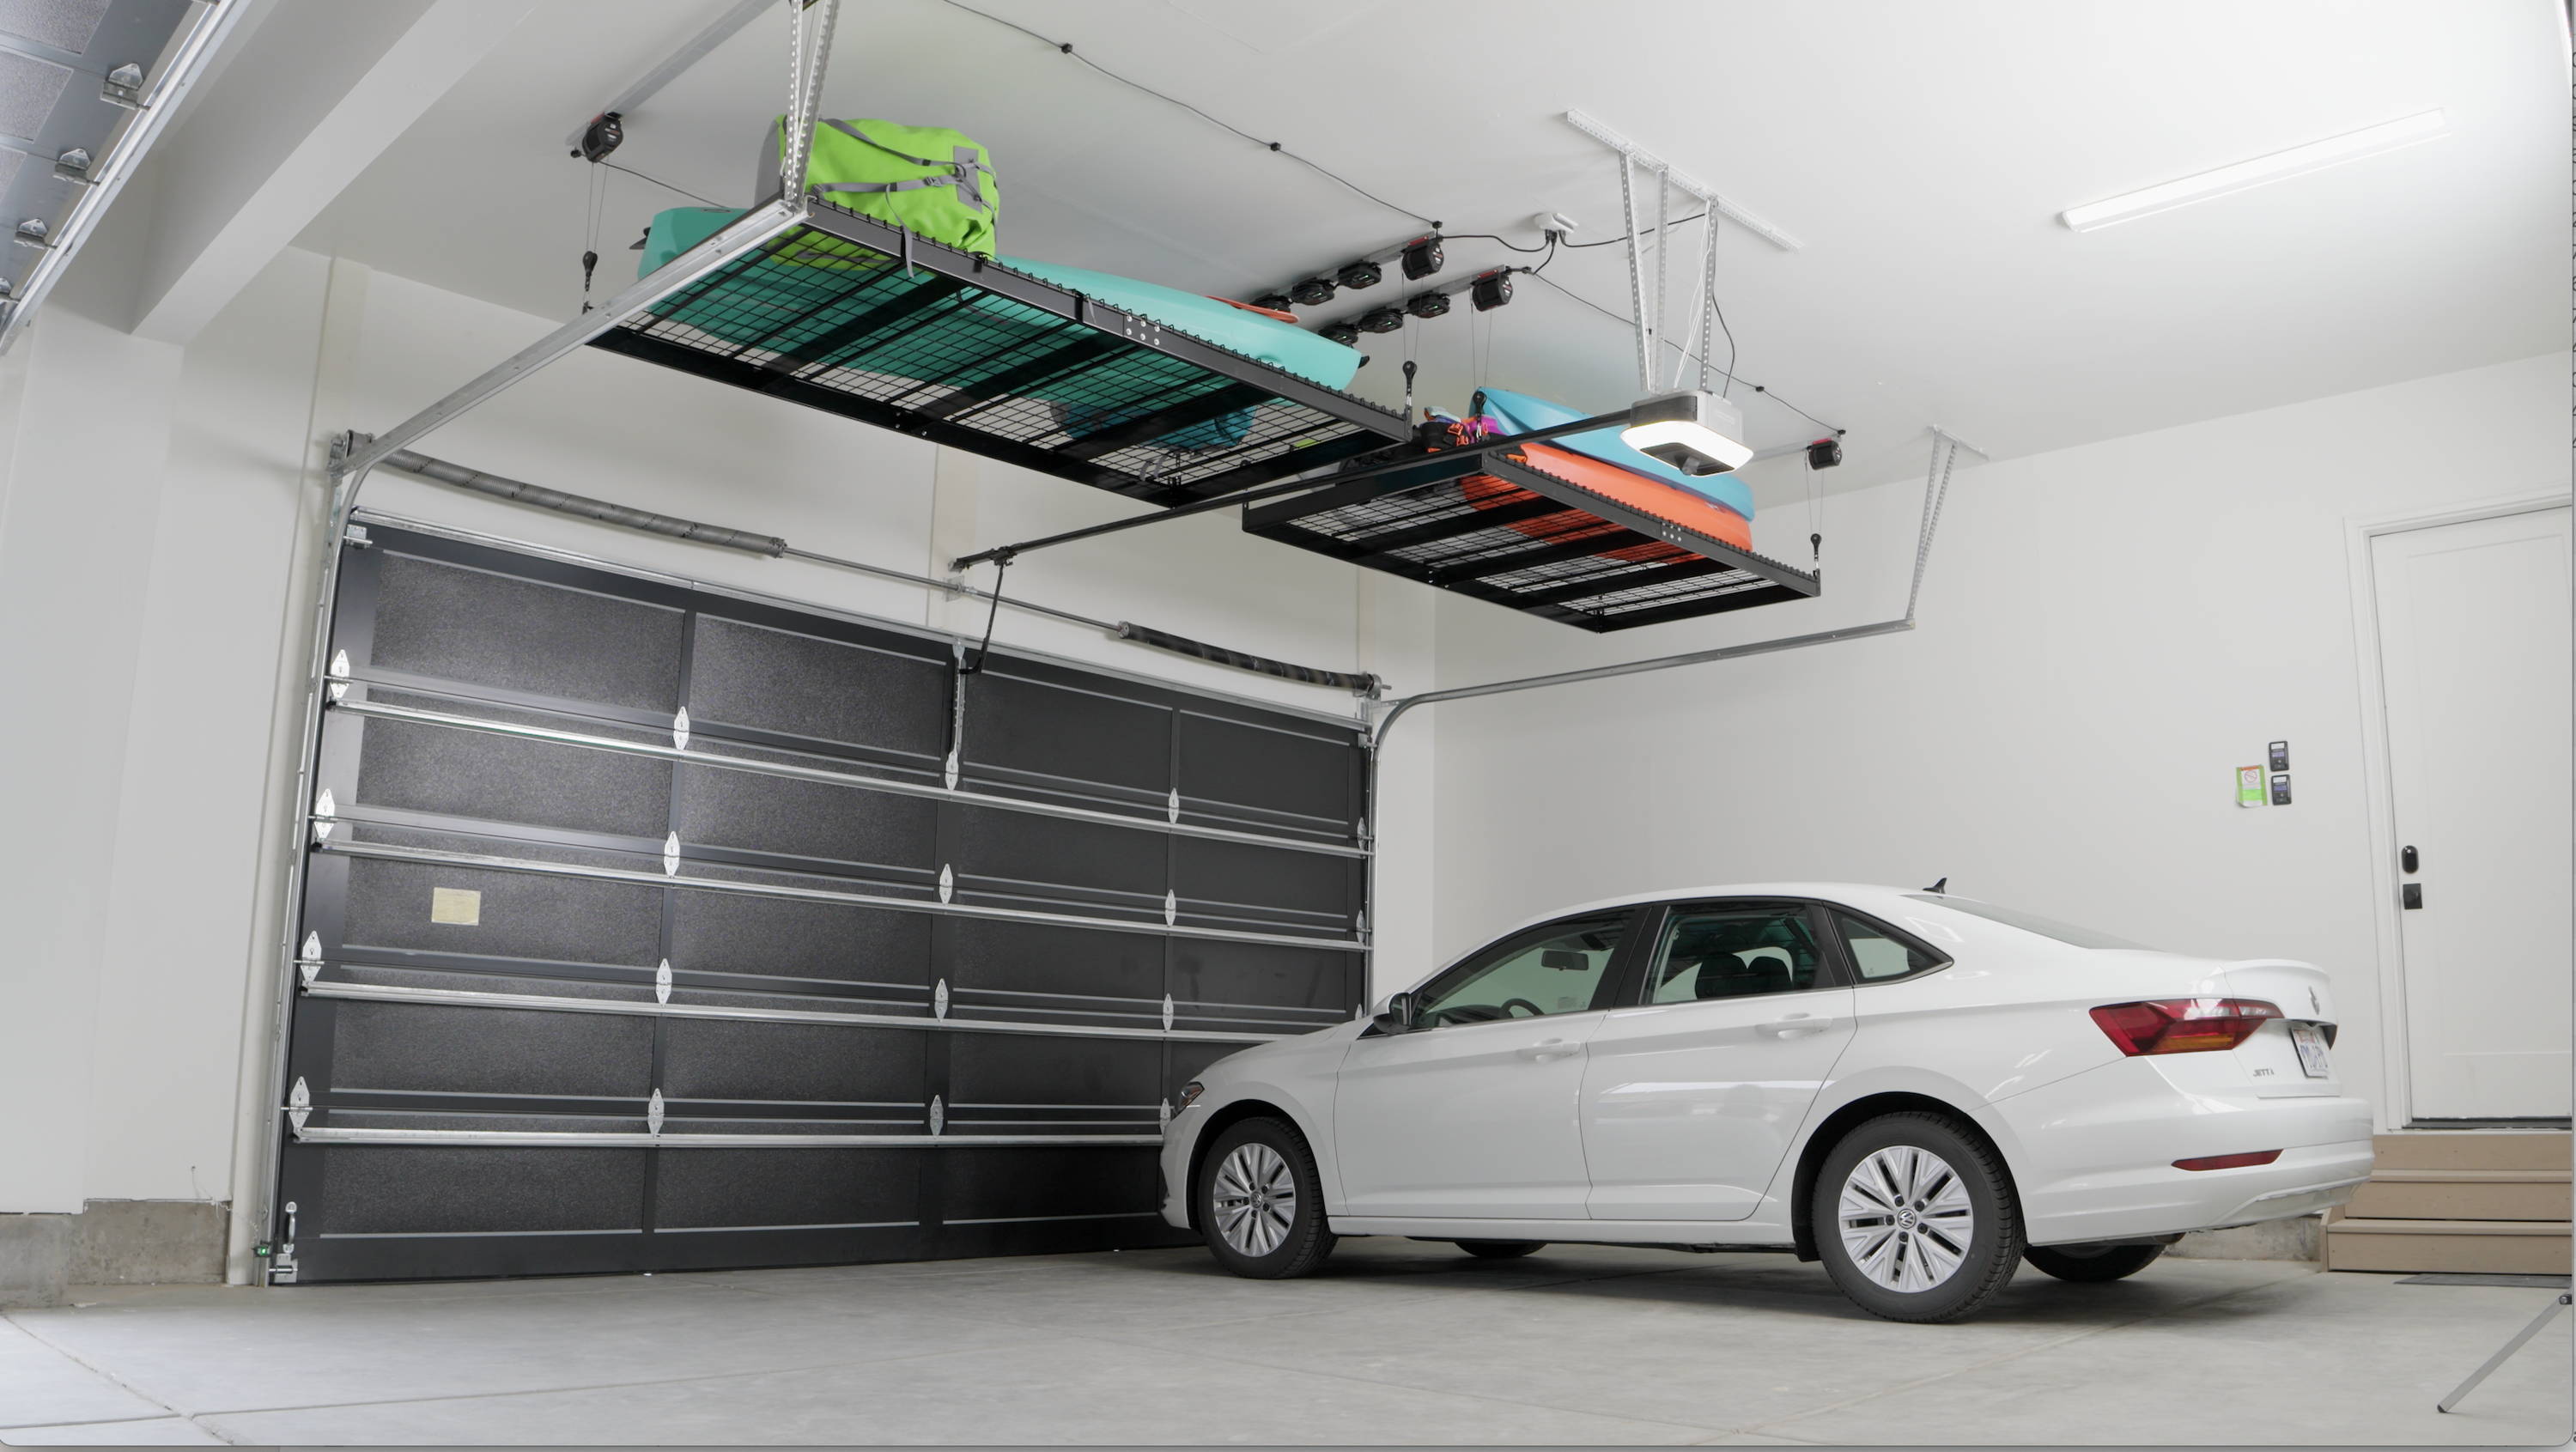 SmarterHome 4'x8' Platform Storage Lifter Garage Storage Solution